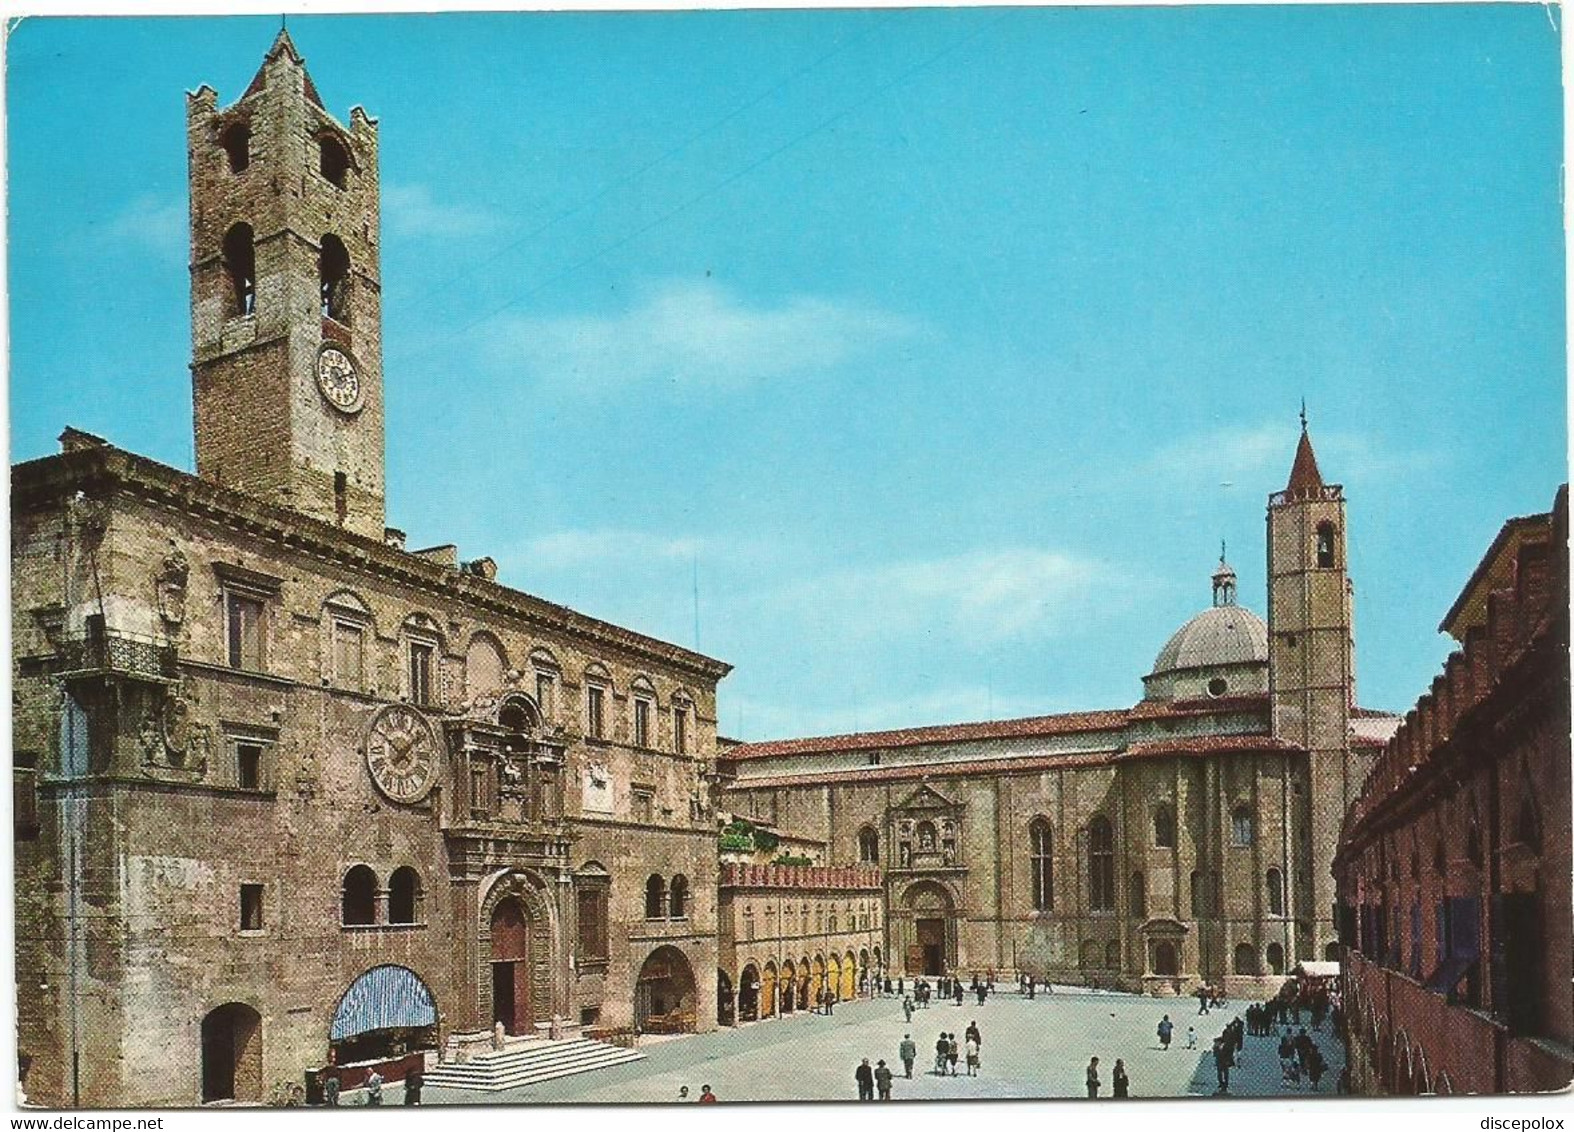 A5877 Ascoli Piceno - Piazza Del Popolo - Animata / Viaggiata 1977 - Ascoli Piceno